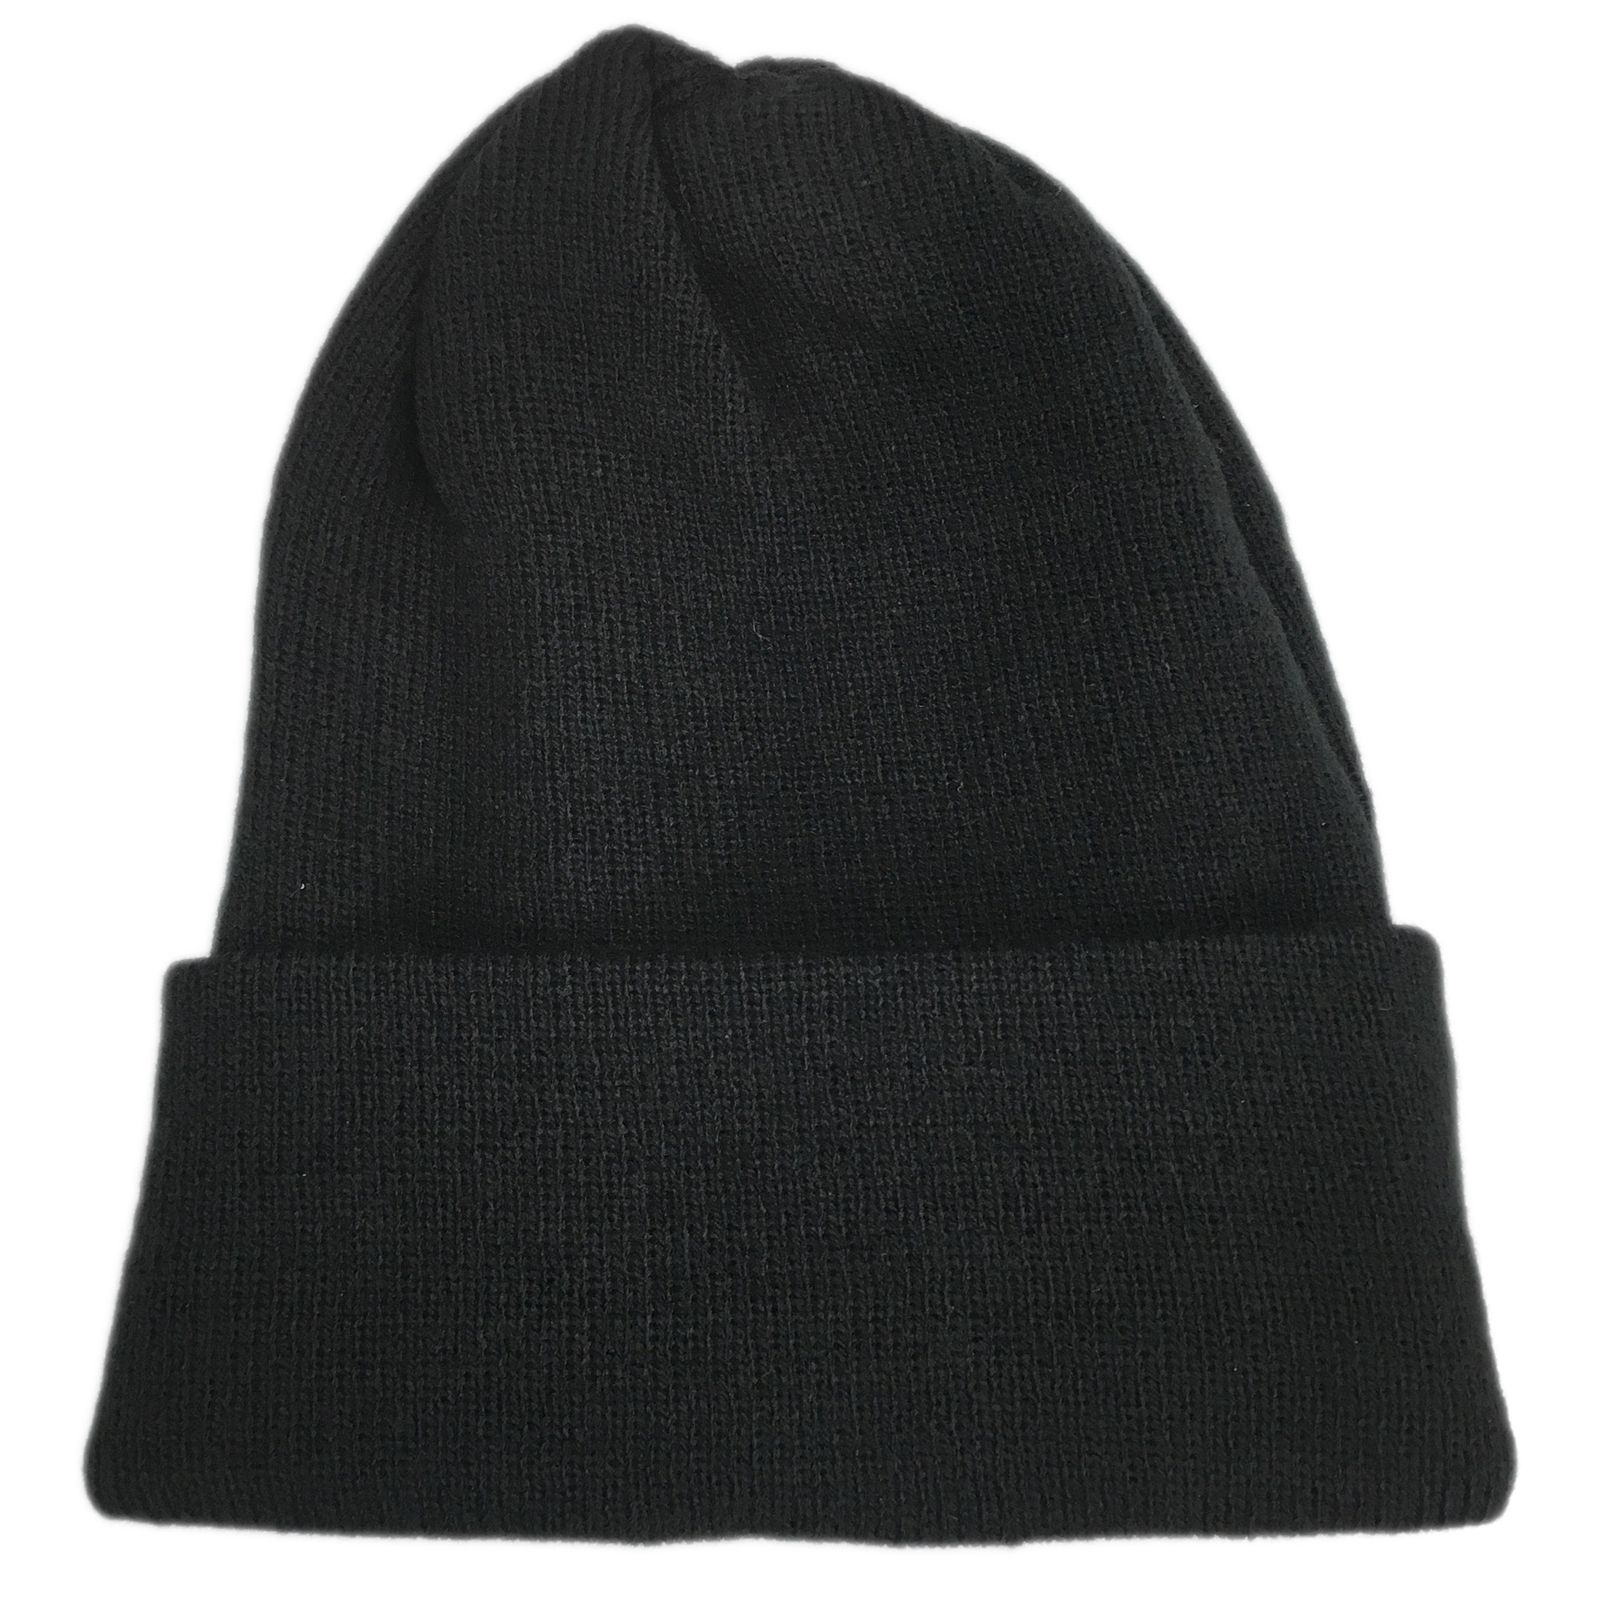 کلاه بافت زمستانی مدل 7130 کد K046 -  - 1